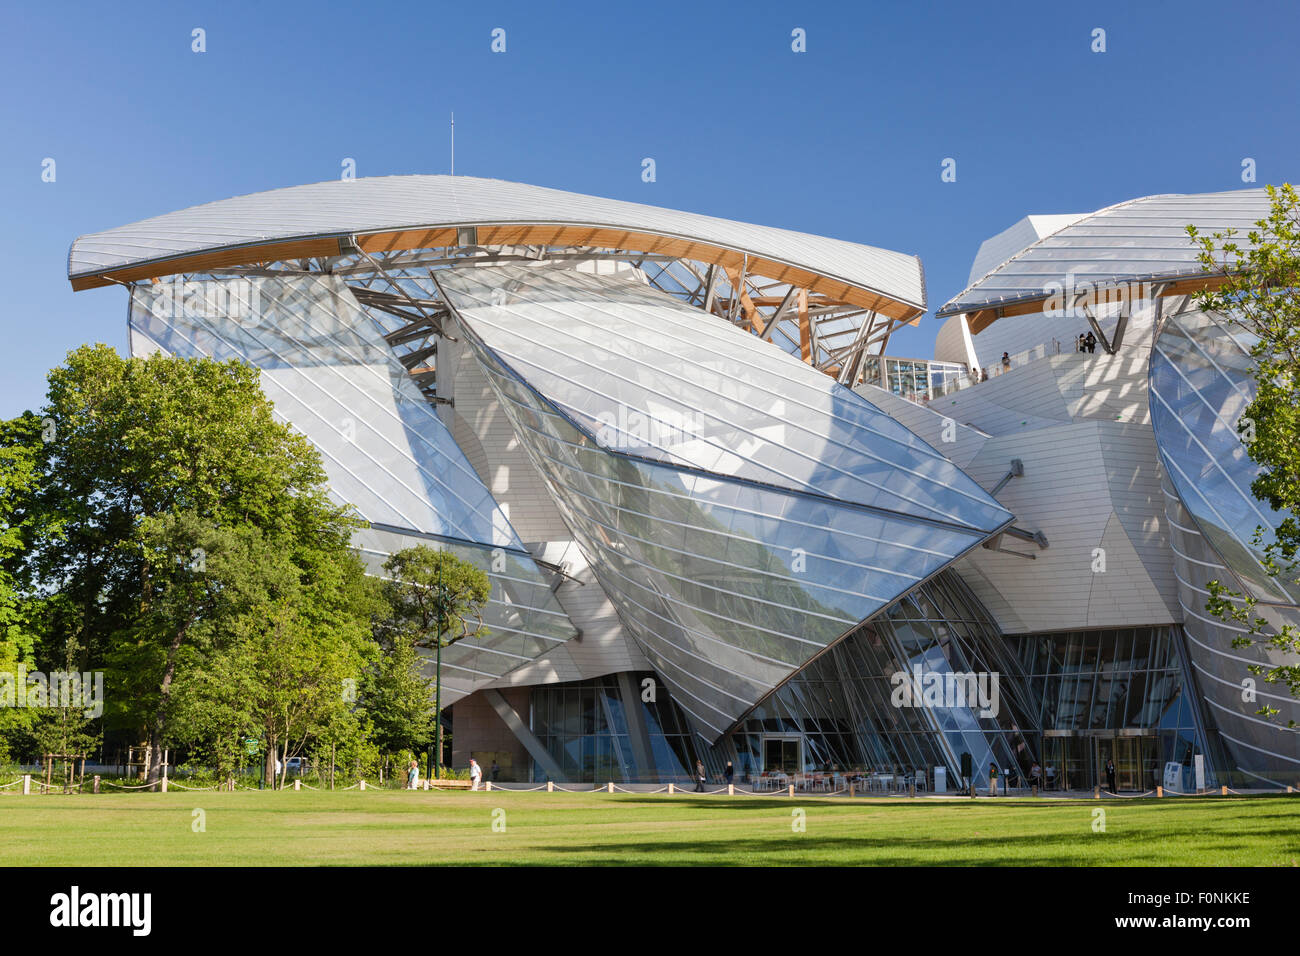 Louis Vuitton Foundation museum in the Bois de Boulogne, Paris Stock Photo: 86528274 - Alamy